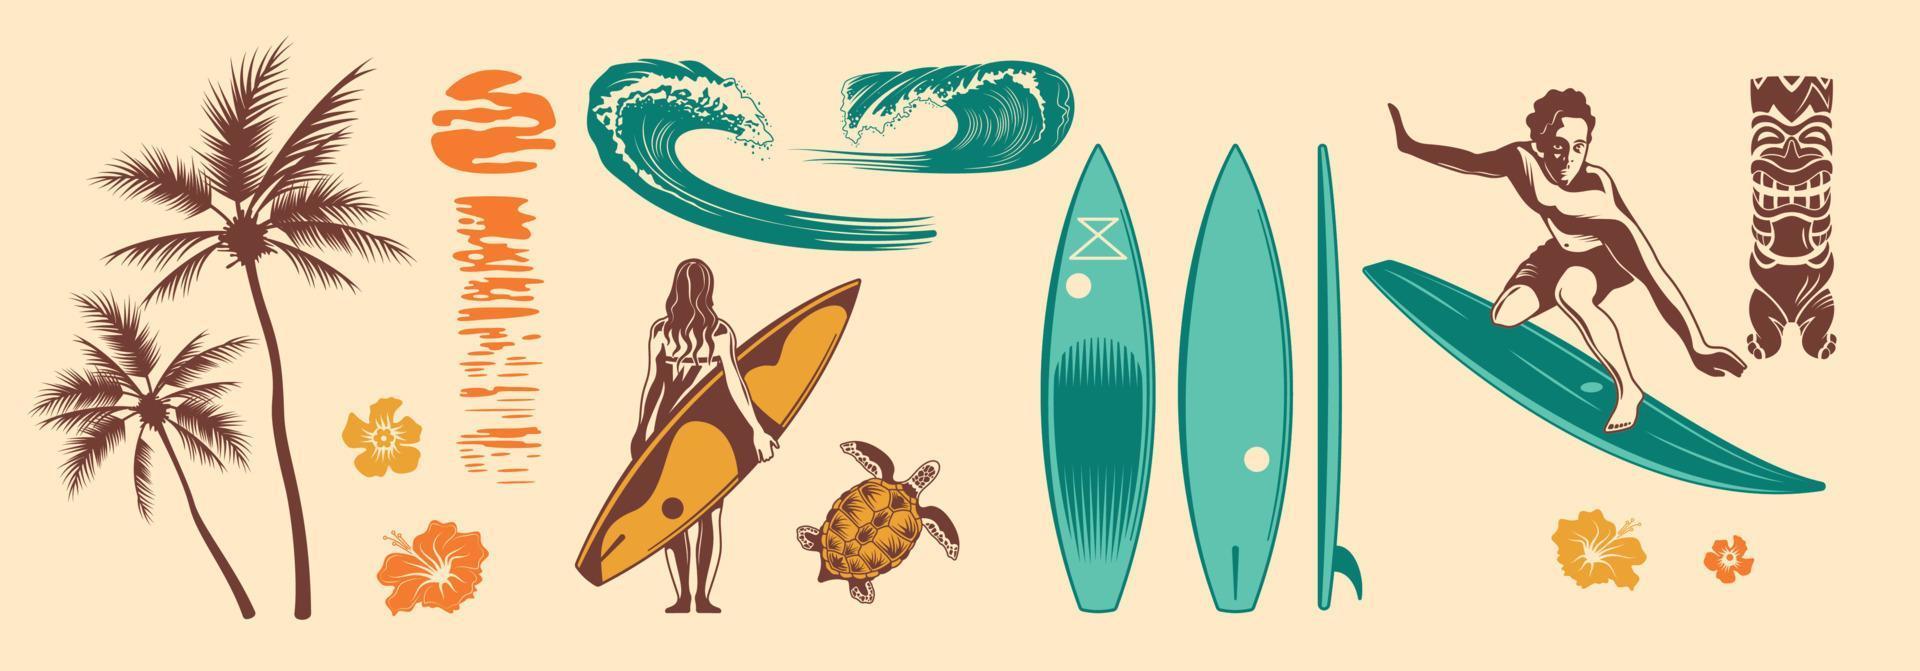 jeu de couleurs dessinés à la main de surf vecteur